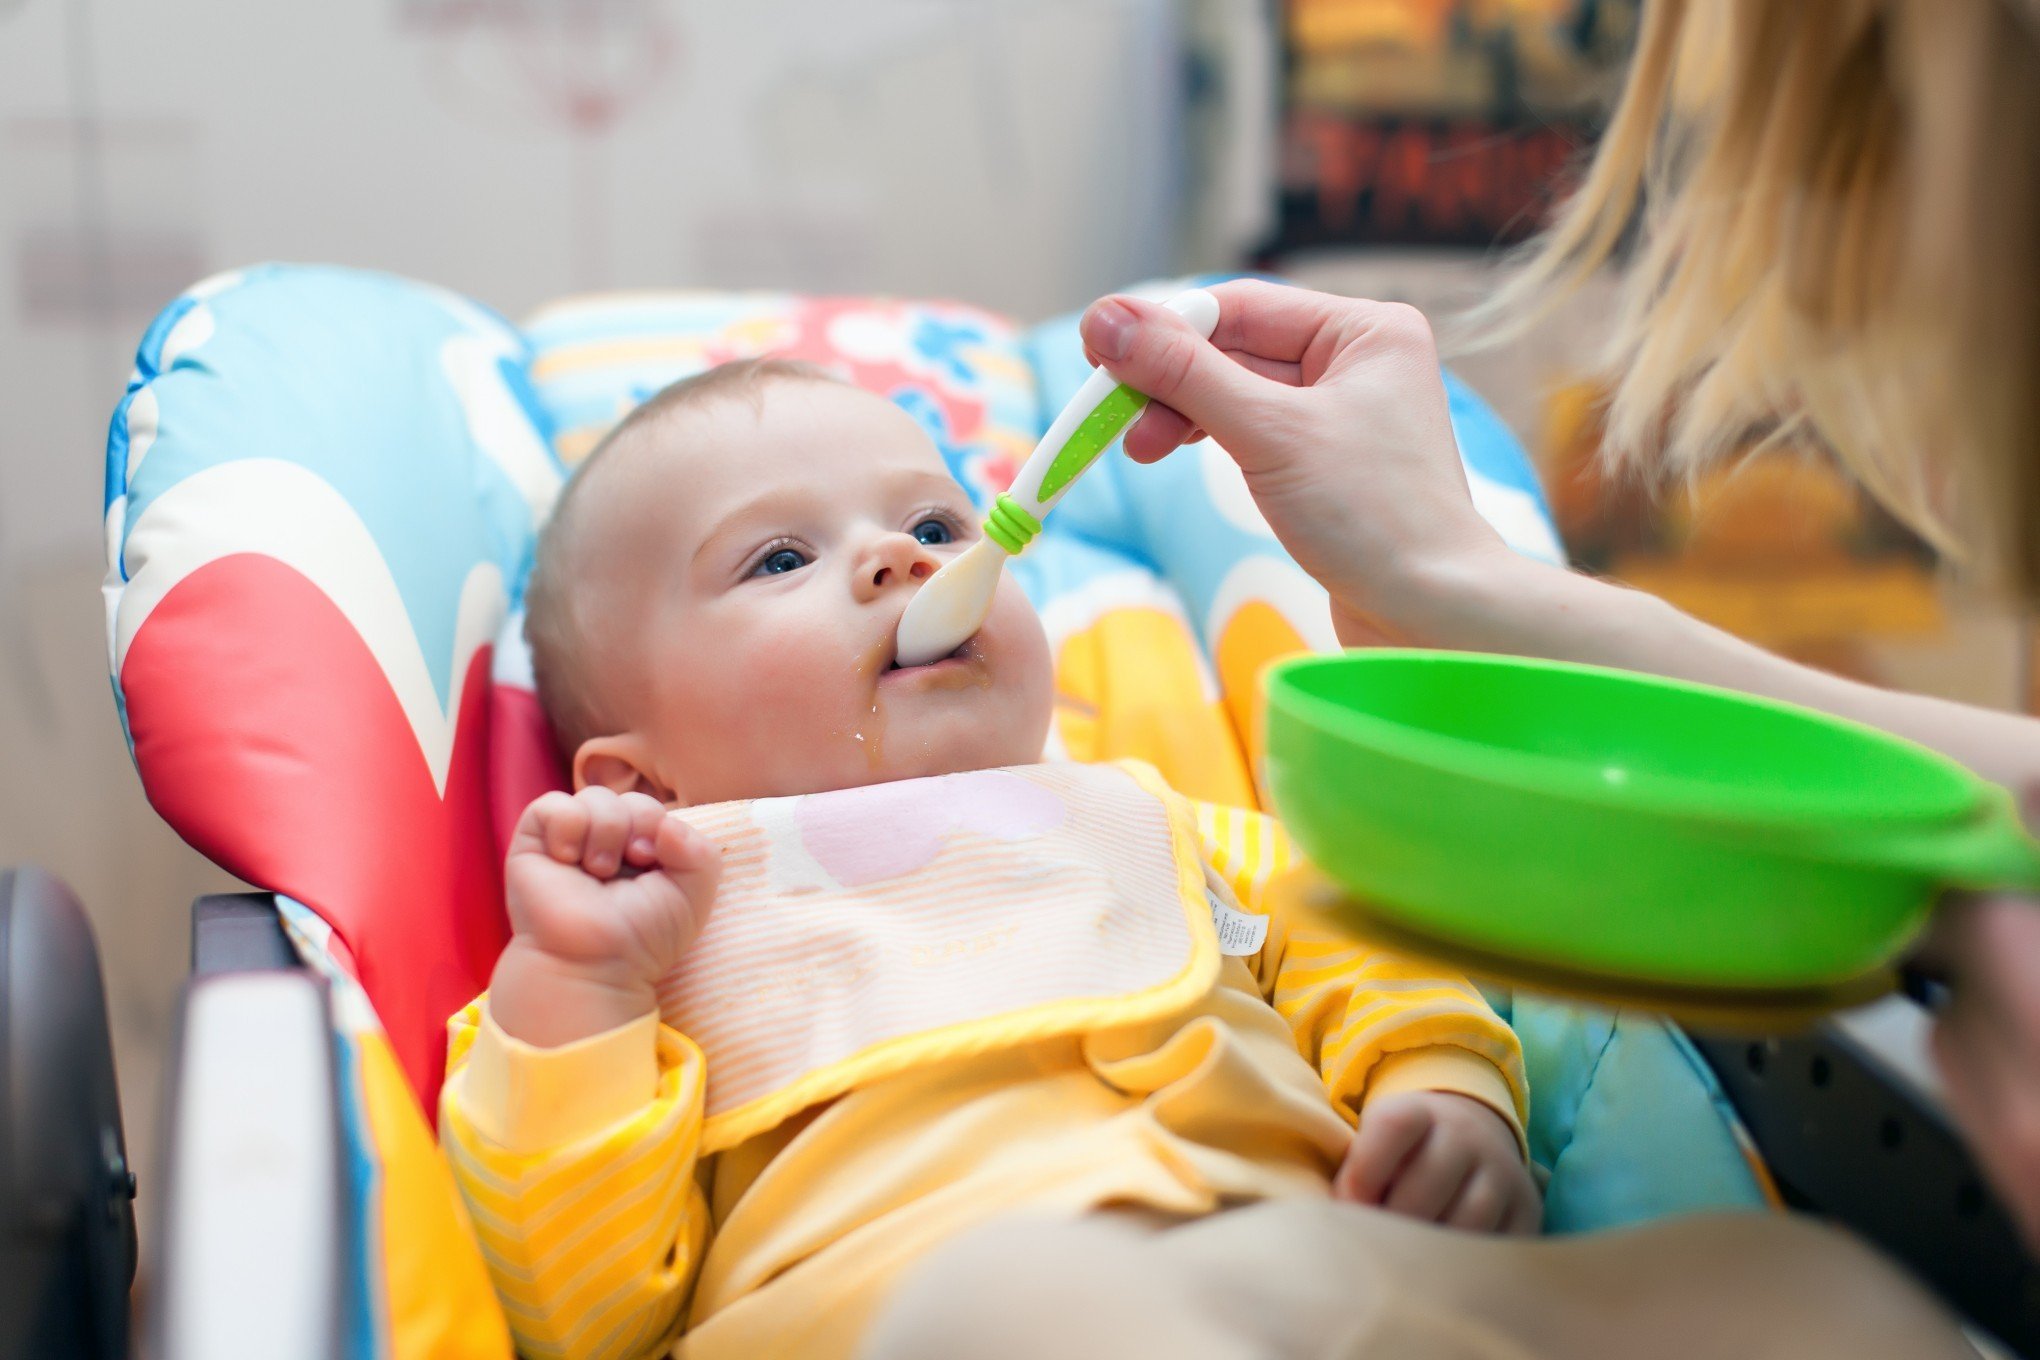 Cientistas fazem alerta sobre aquecer comida de bebê em recipientes de plástico; confira